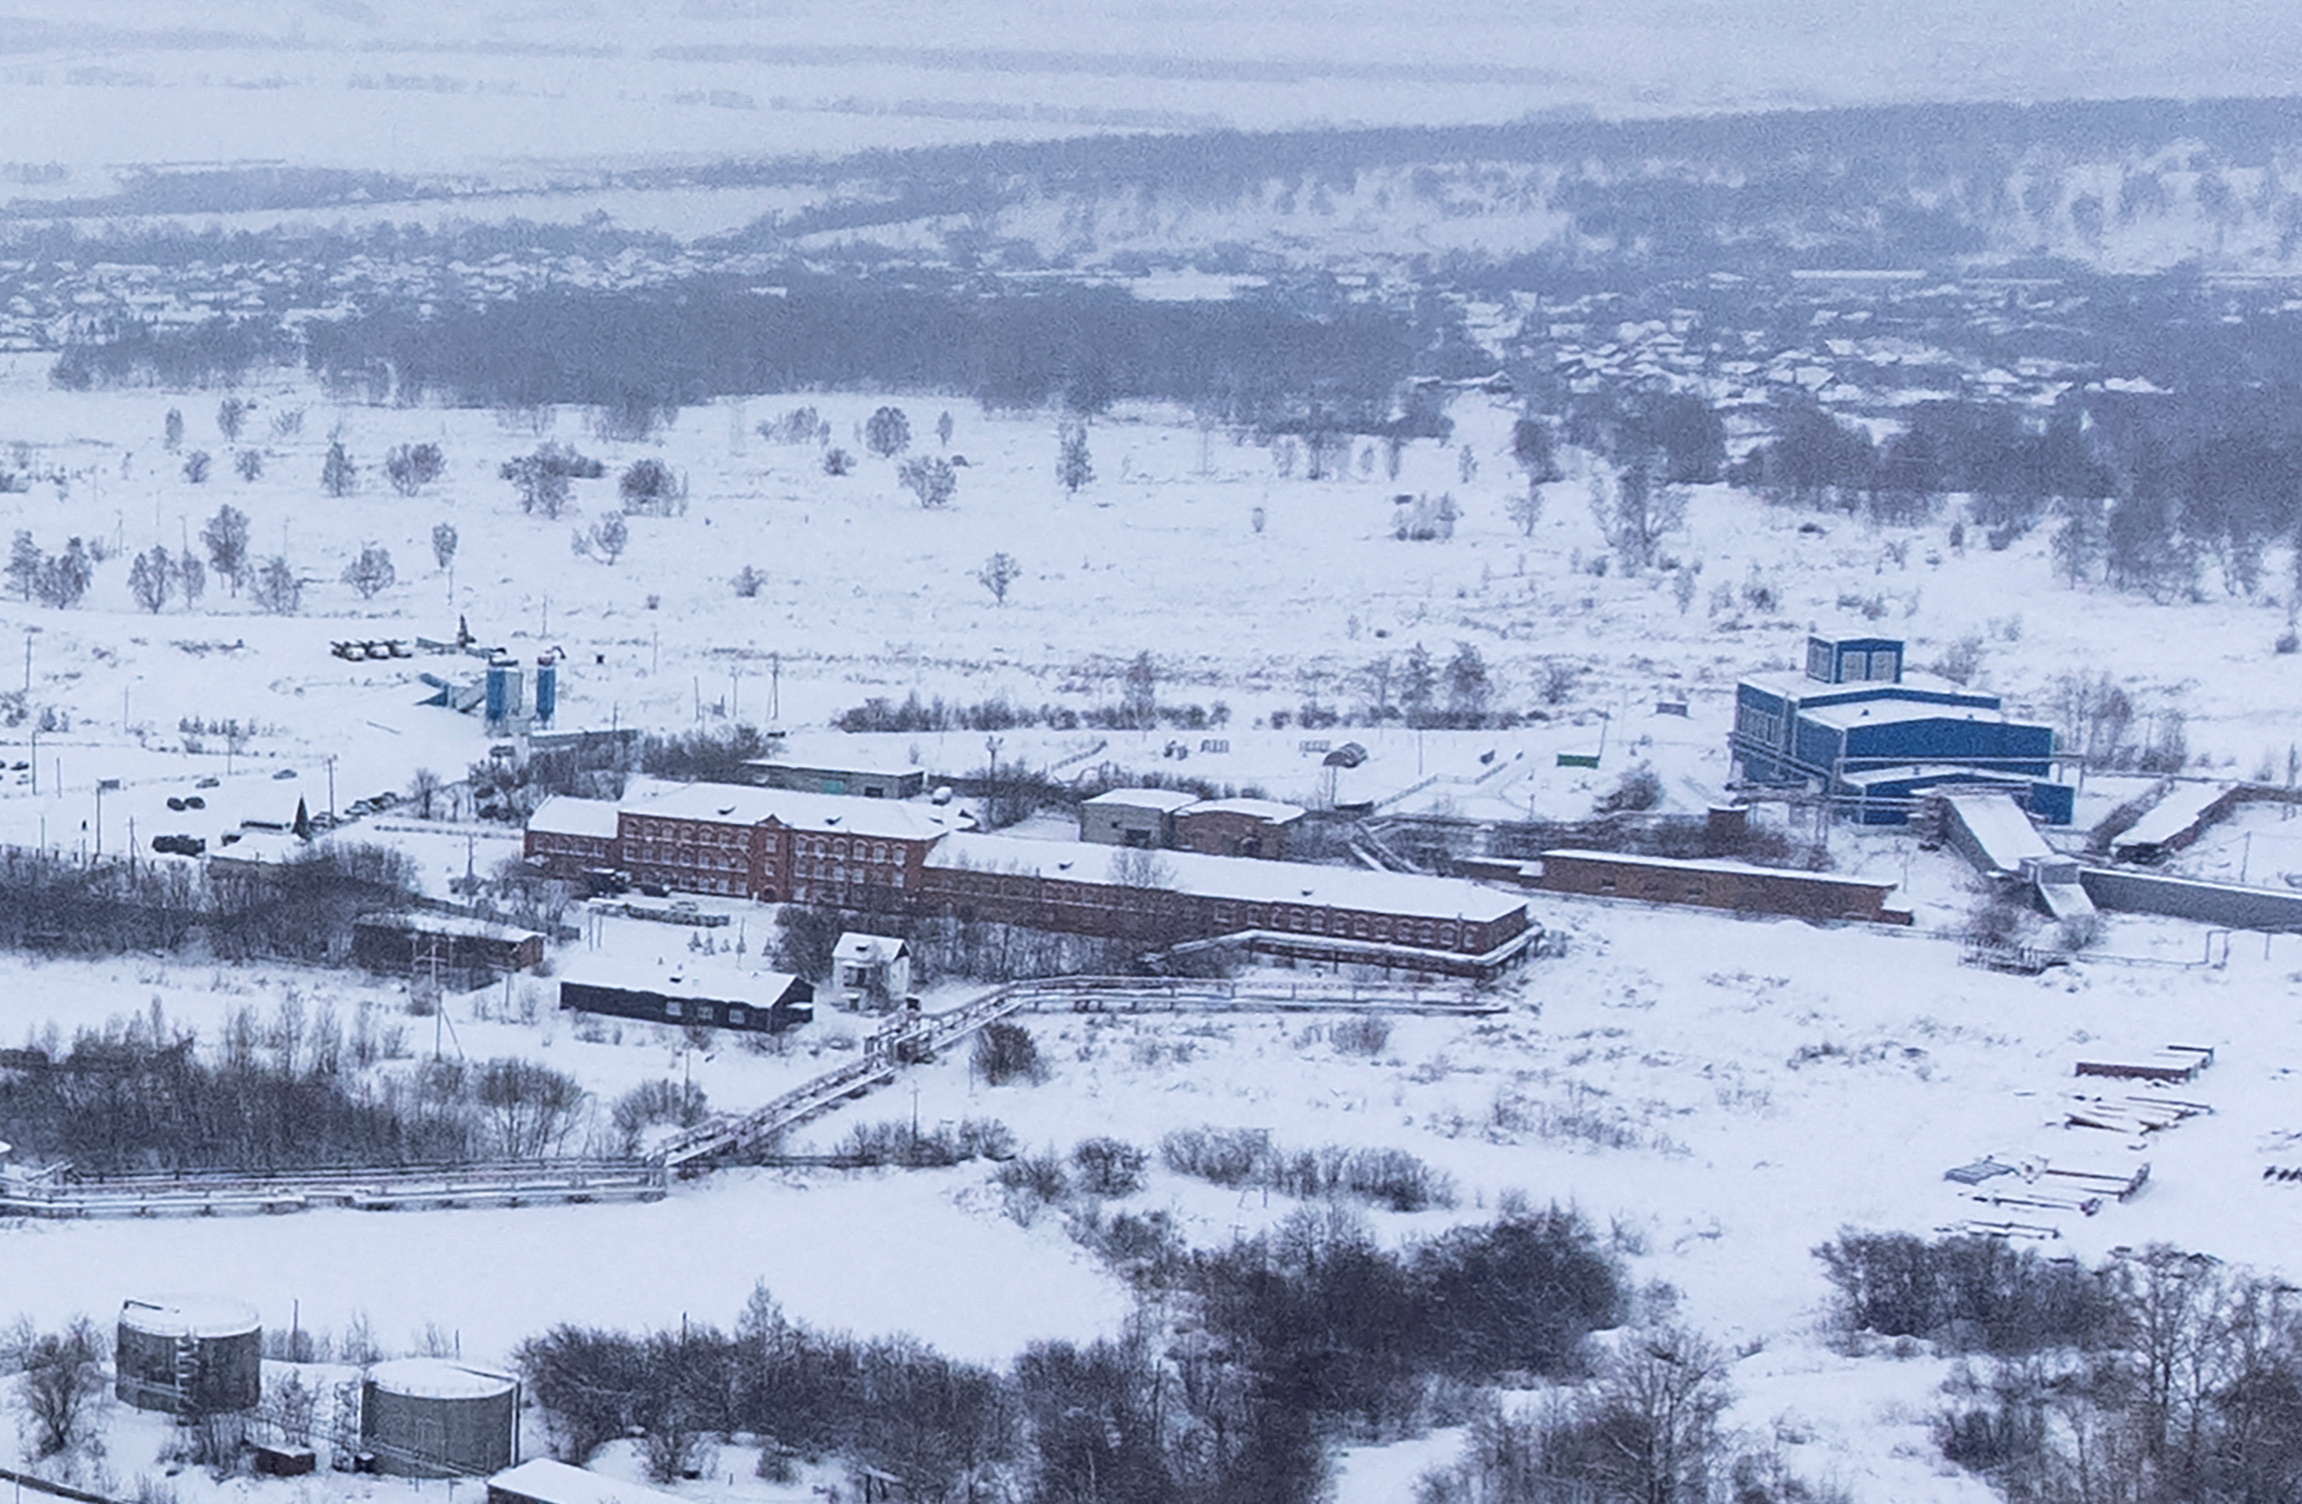 Accident at Listvyazhnaya coal mine in Kemerovo region